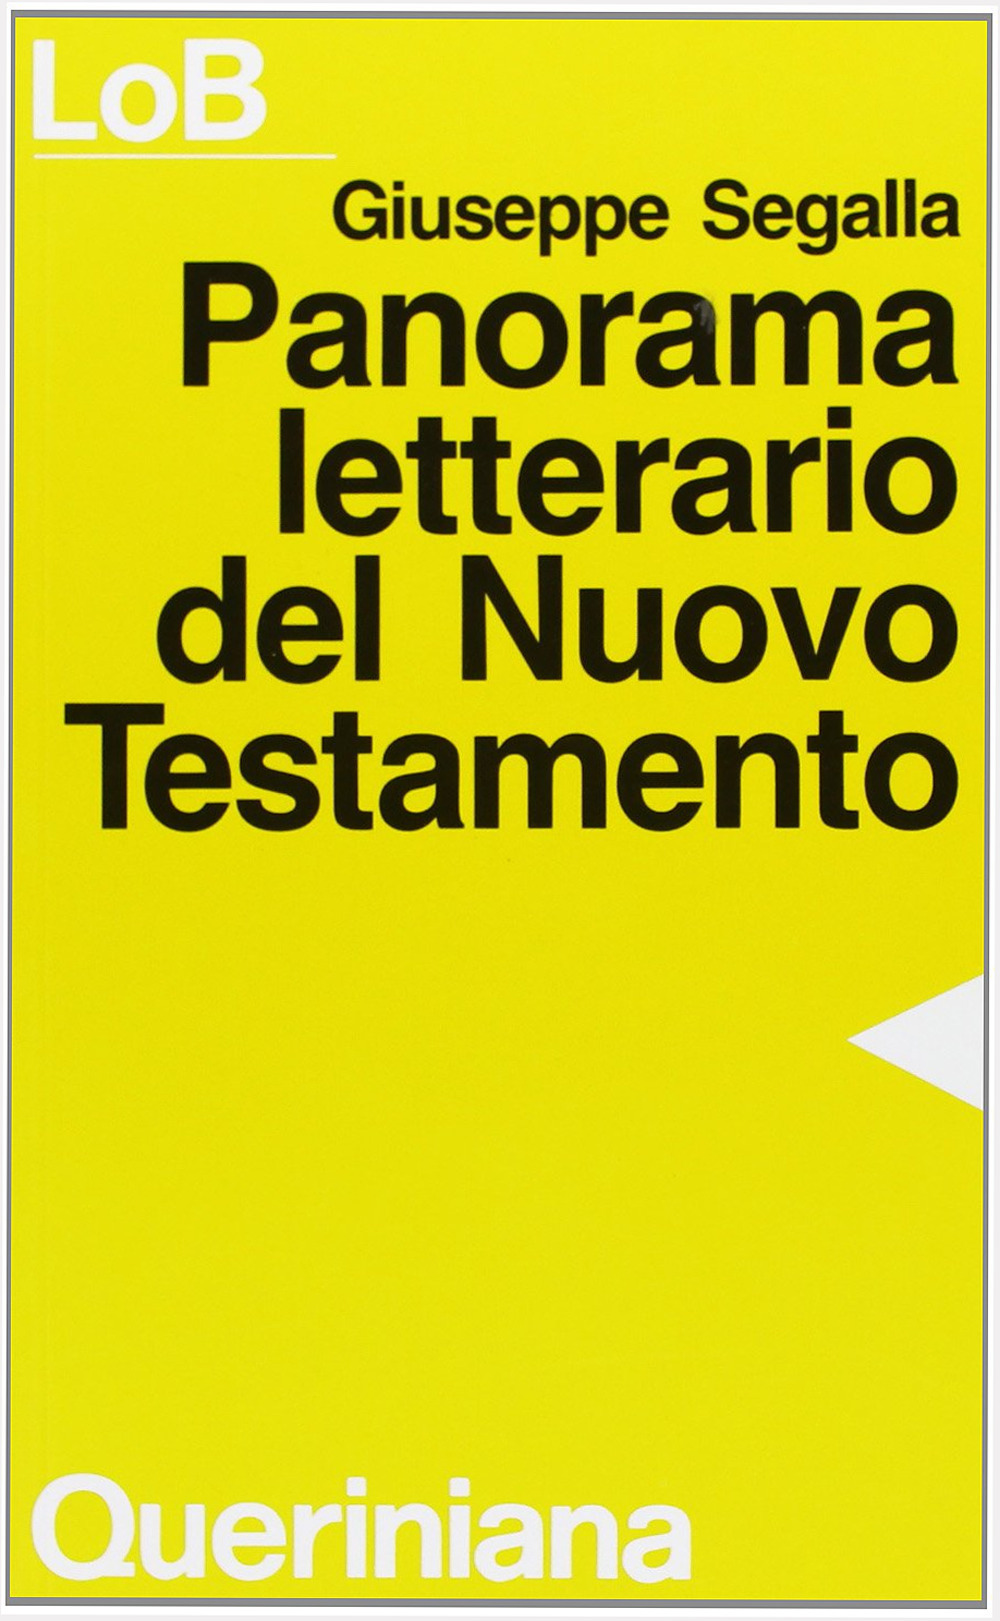 Panorama letterario del Nuovo Testamento